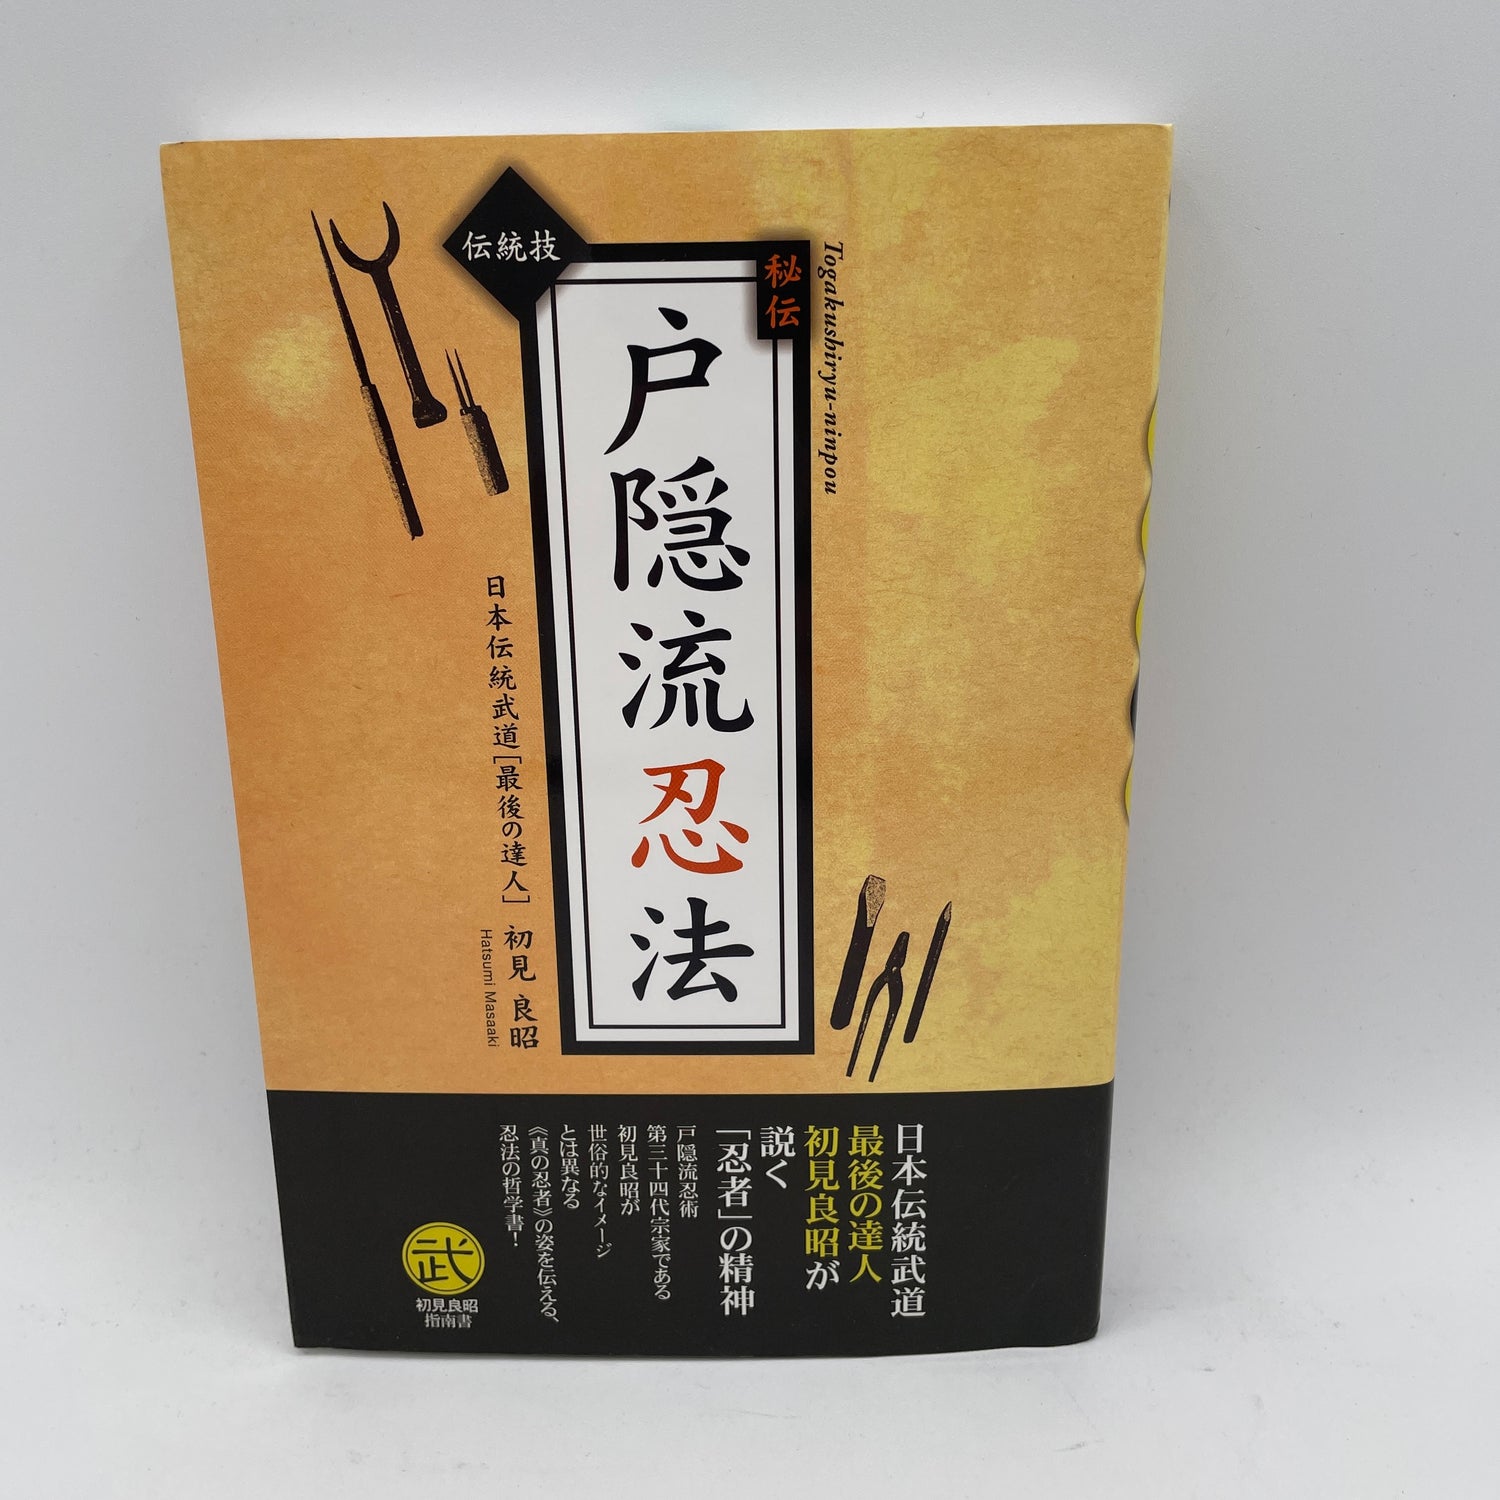 Libro Togakure Ryu Ninpo Taijutsu de Masaaki Hatsumi